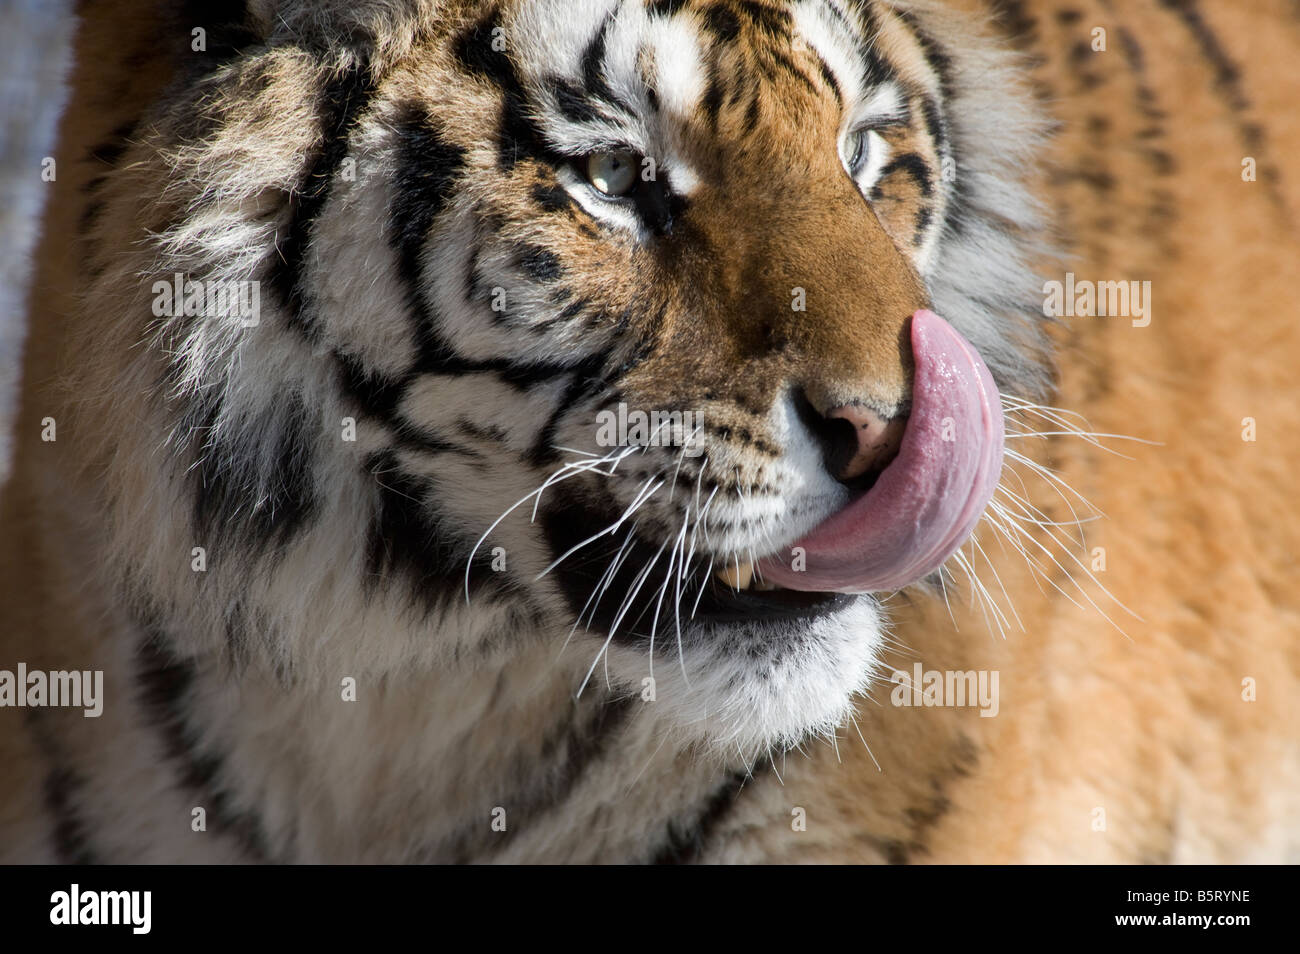 Amur or Siberian tiger Panthera tigris altaica licking nose Stock Photo